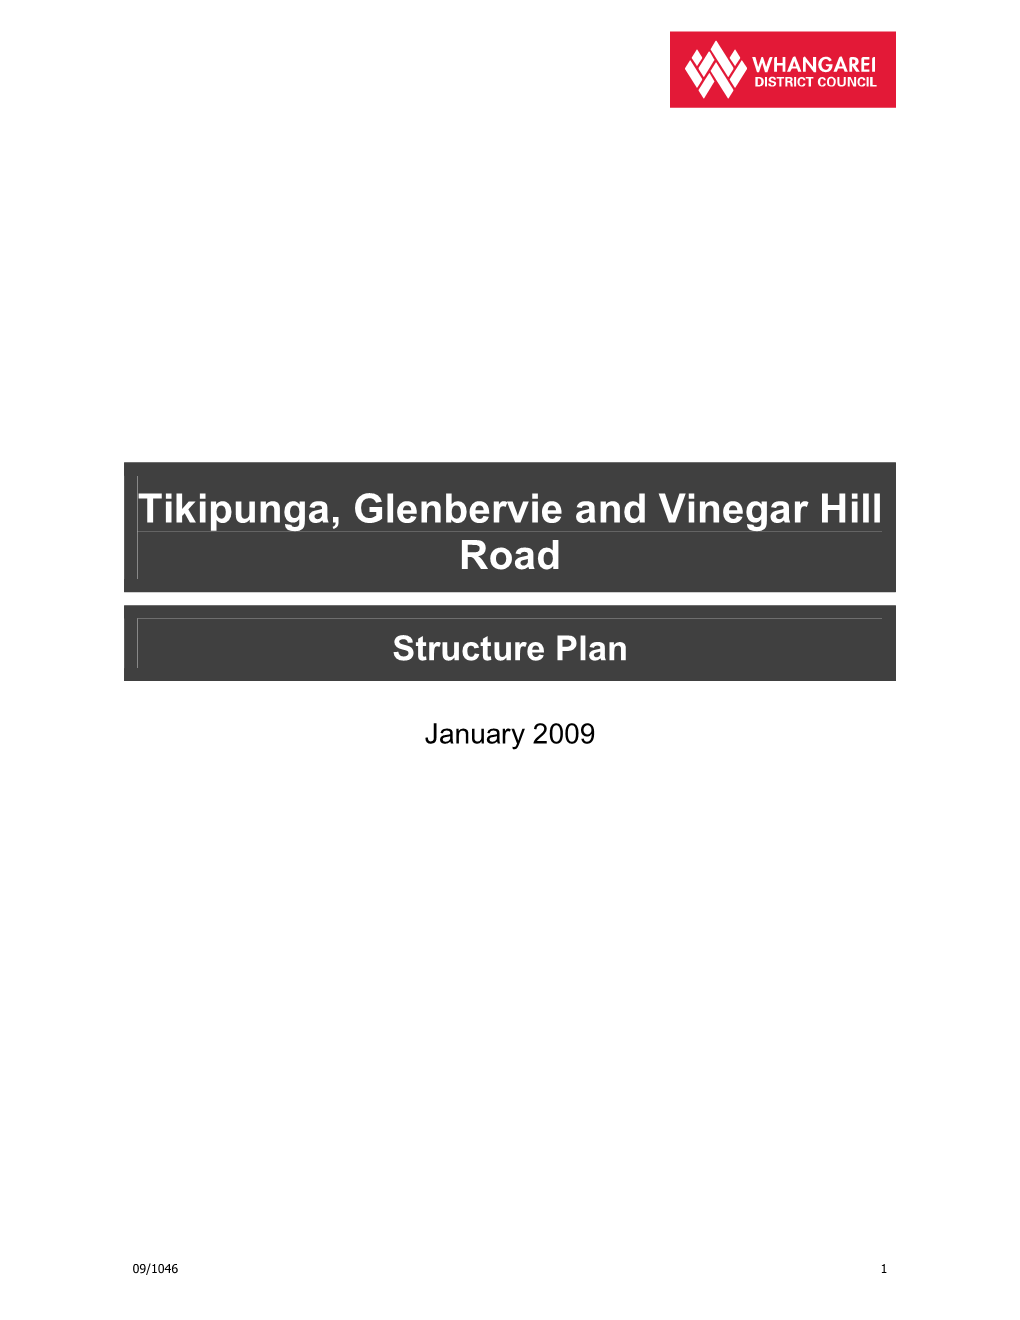 Tikipunga Glenbervie Structure Plan 2009